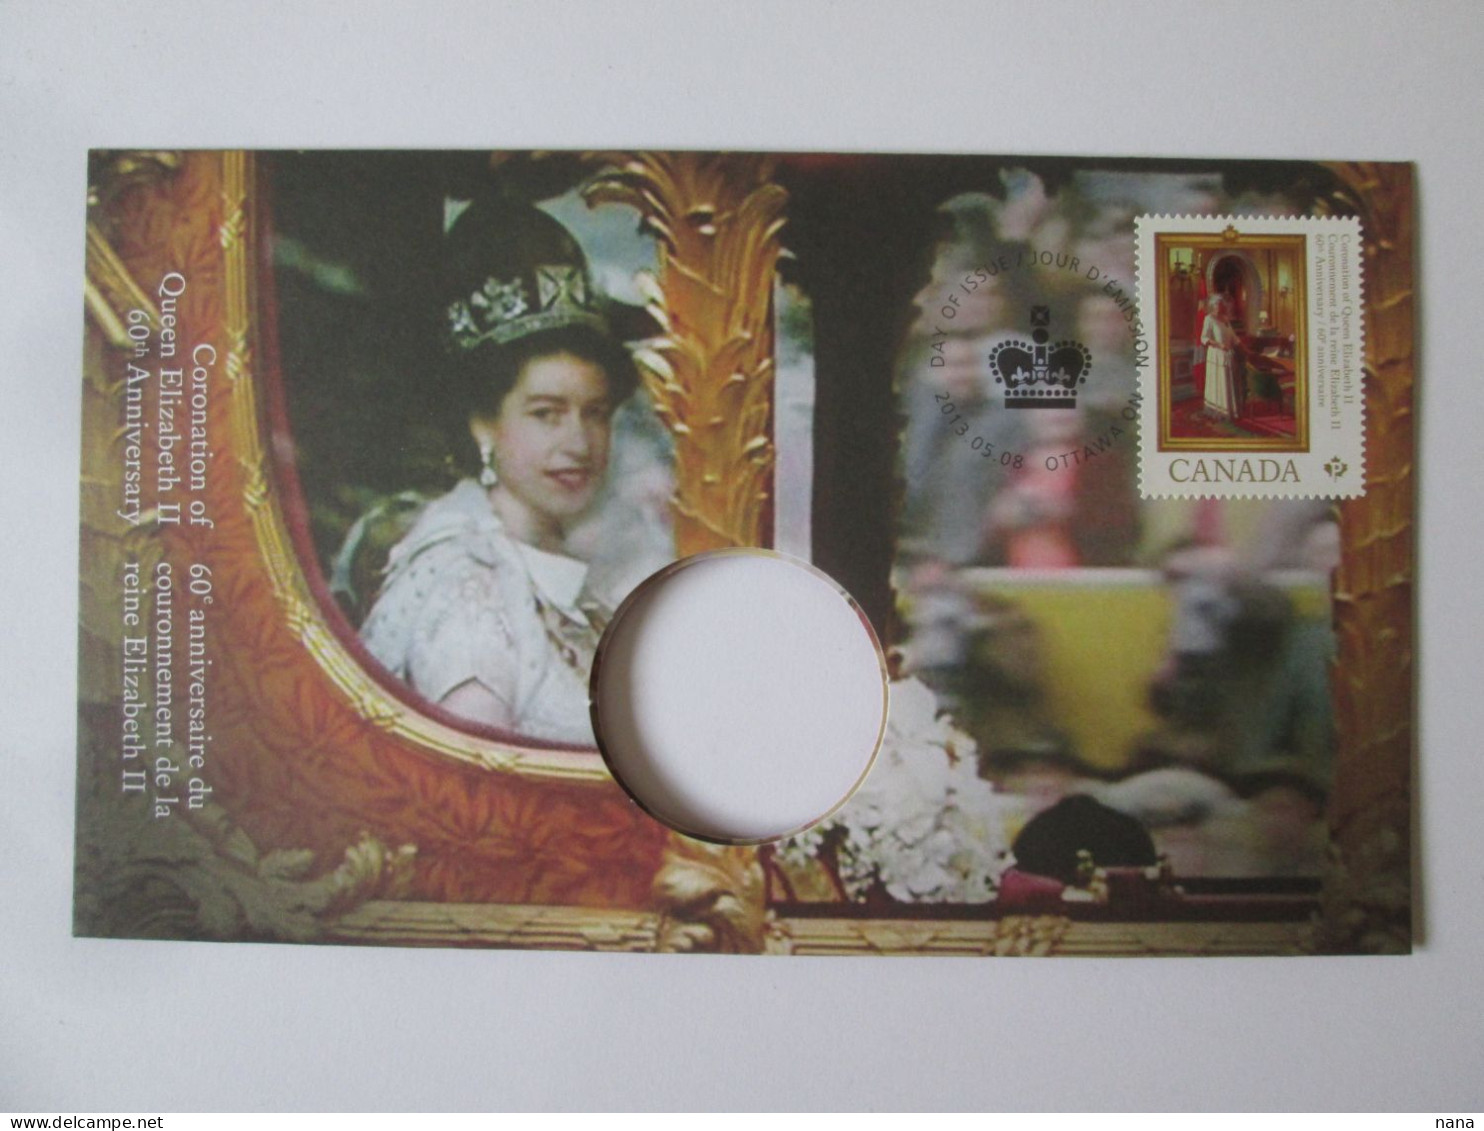 Canada Envel.philatelique Sans Monnaie,reine Elizabeth II,60e Anniv.tirage Limite A 10000/Philat.cover Without Coin2013 - Lettres & Documents